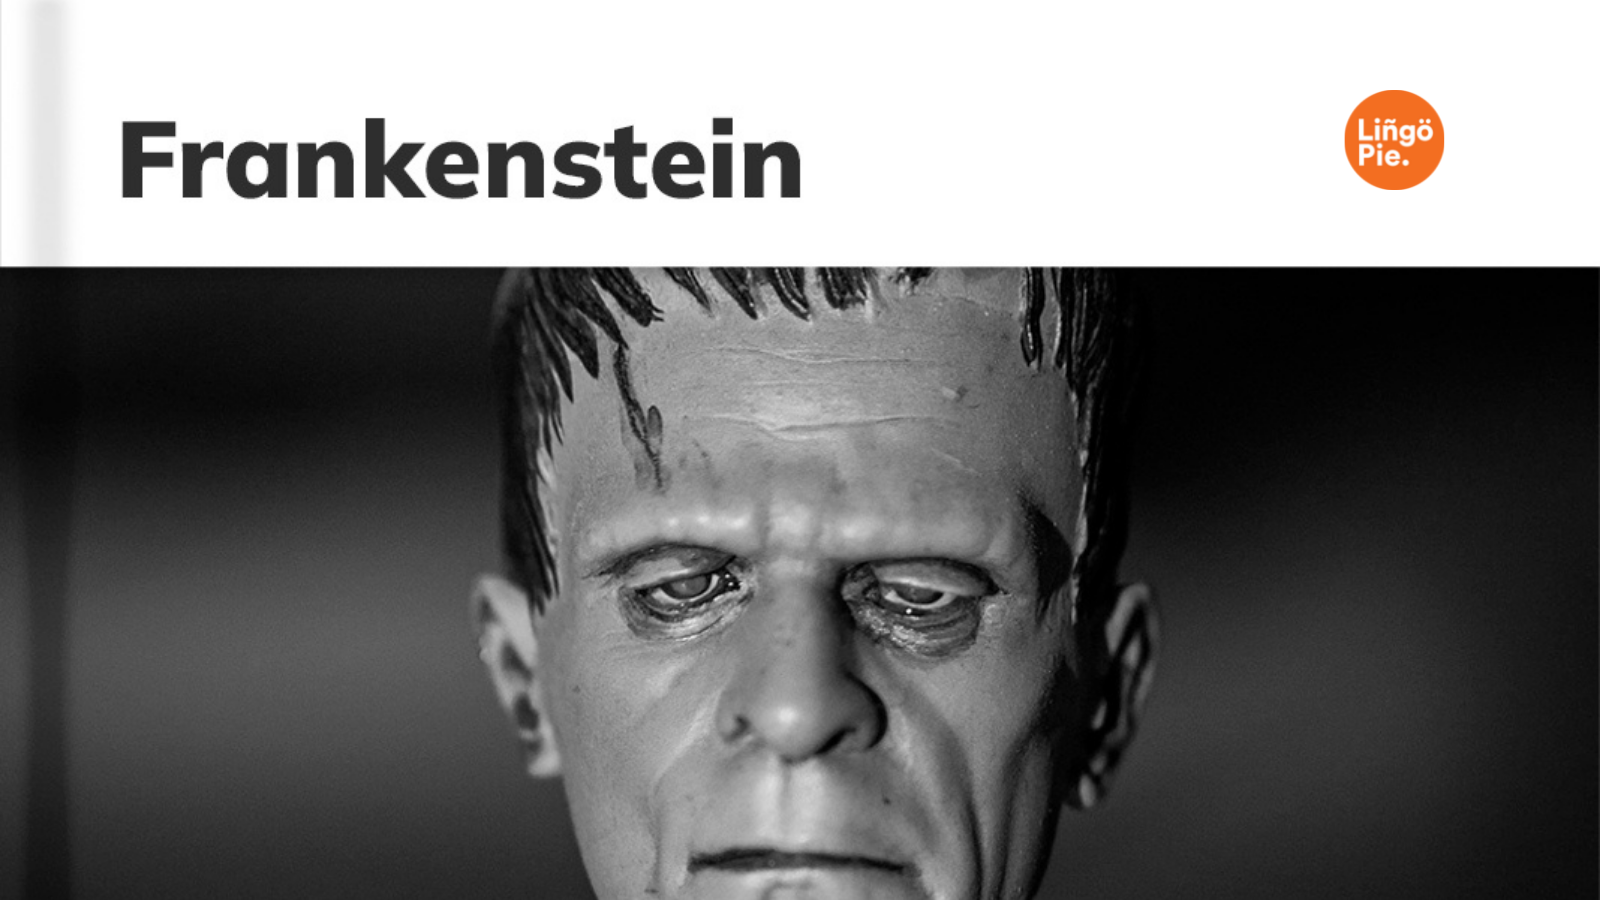 Frankenstein on Lingopie.